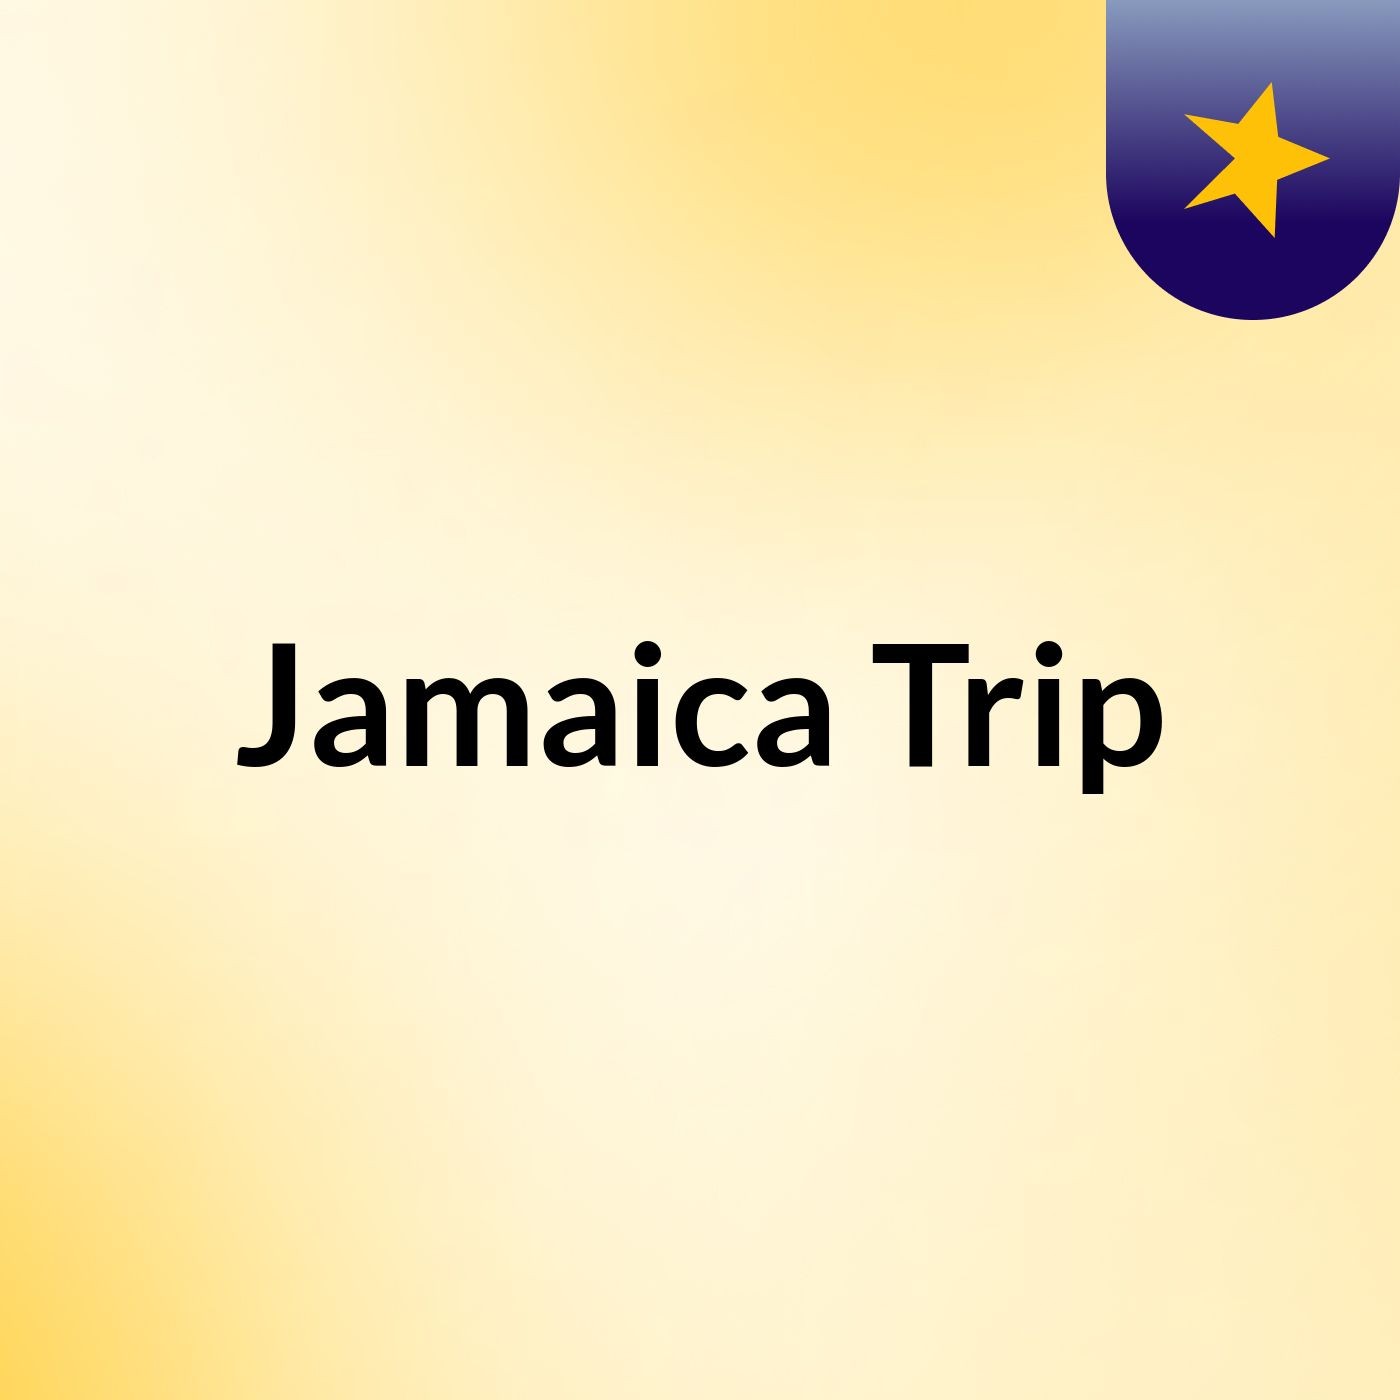 Jamaica Trip